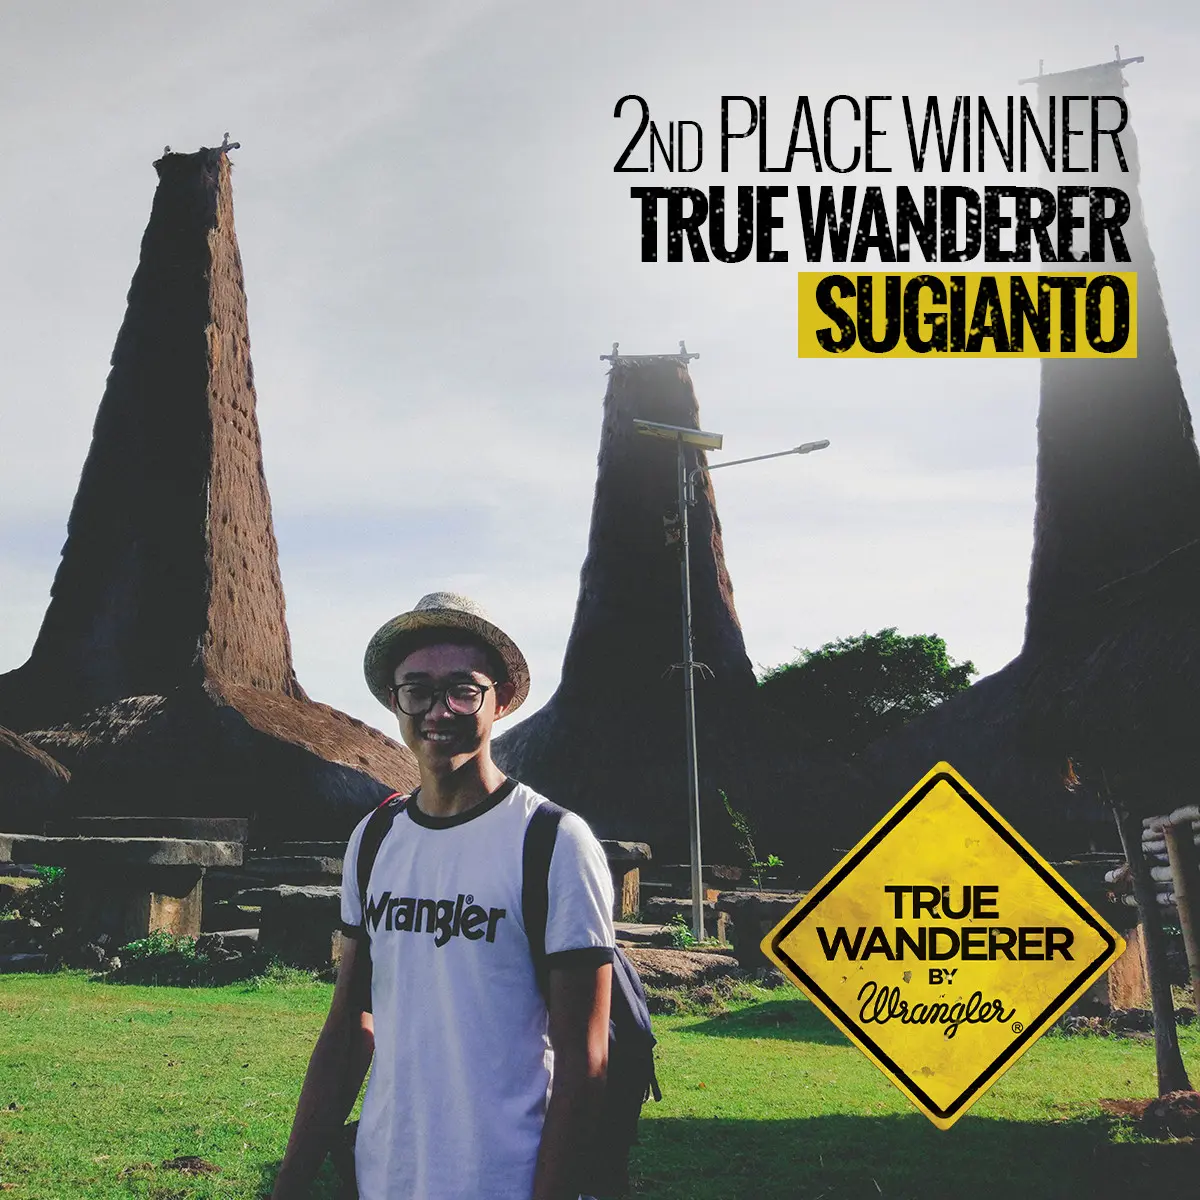 Sugianto menjadi pemenang pertama dari kompetisi Wrangler True Wanderer 2017 yang diadakan oleh Wrangler.